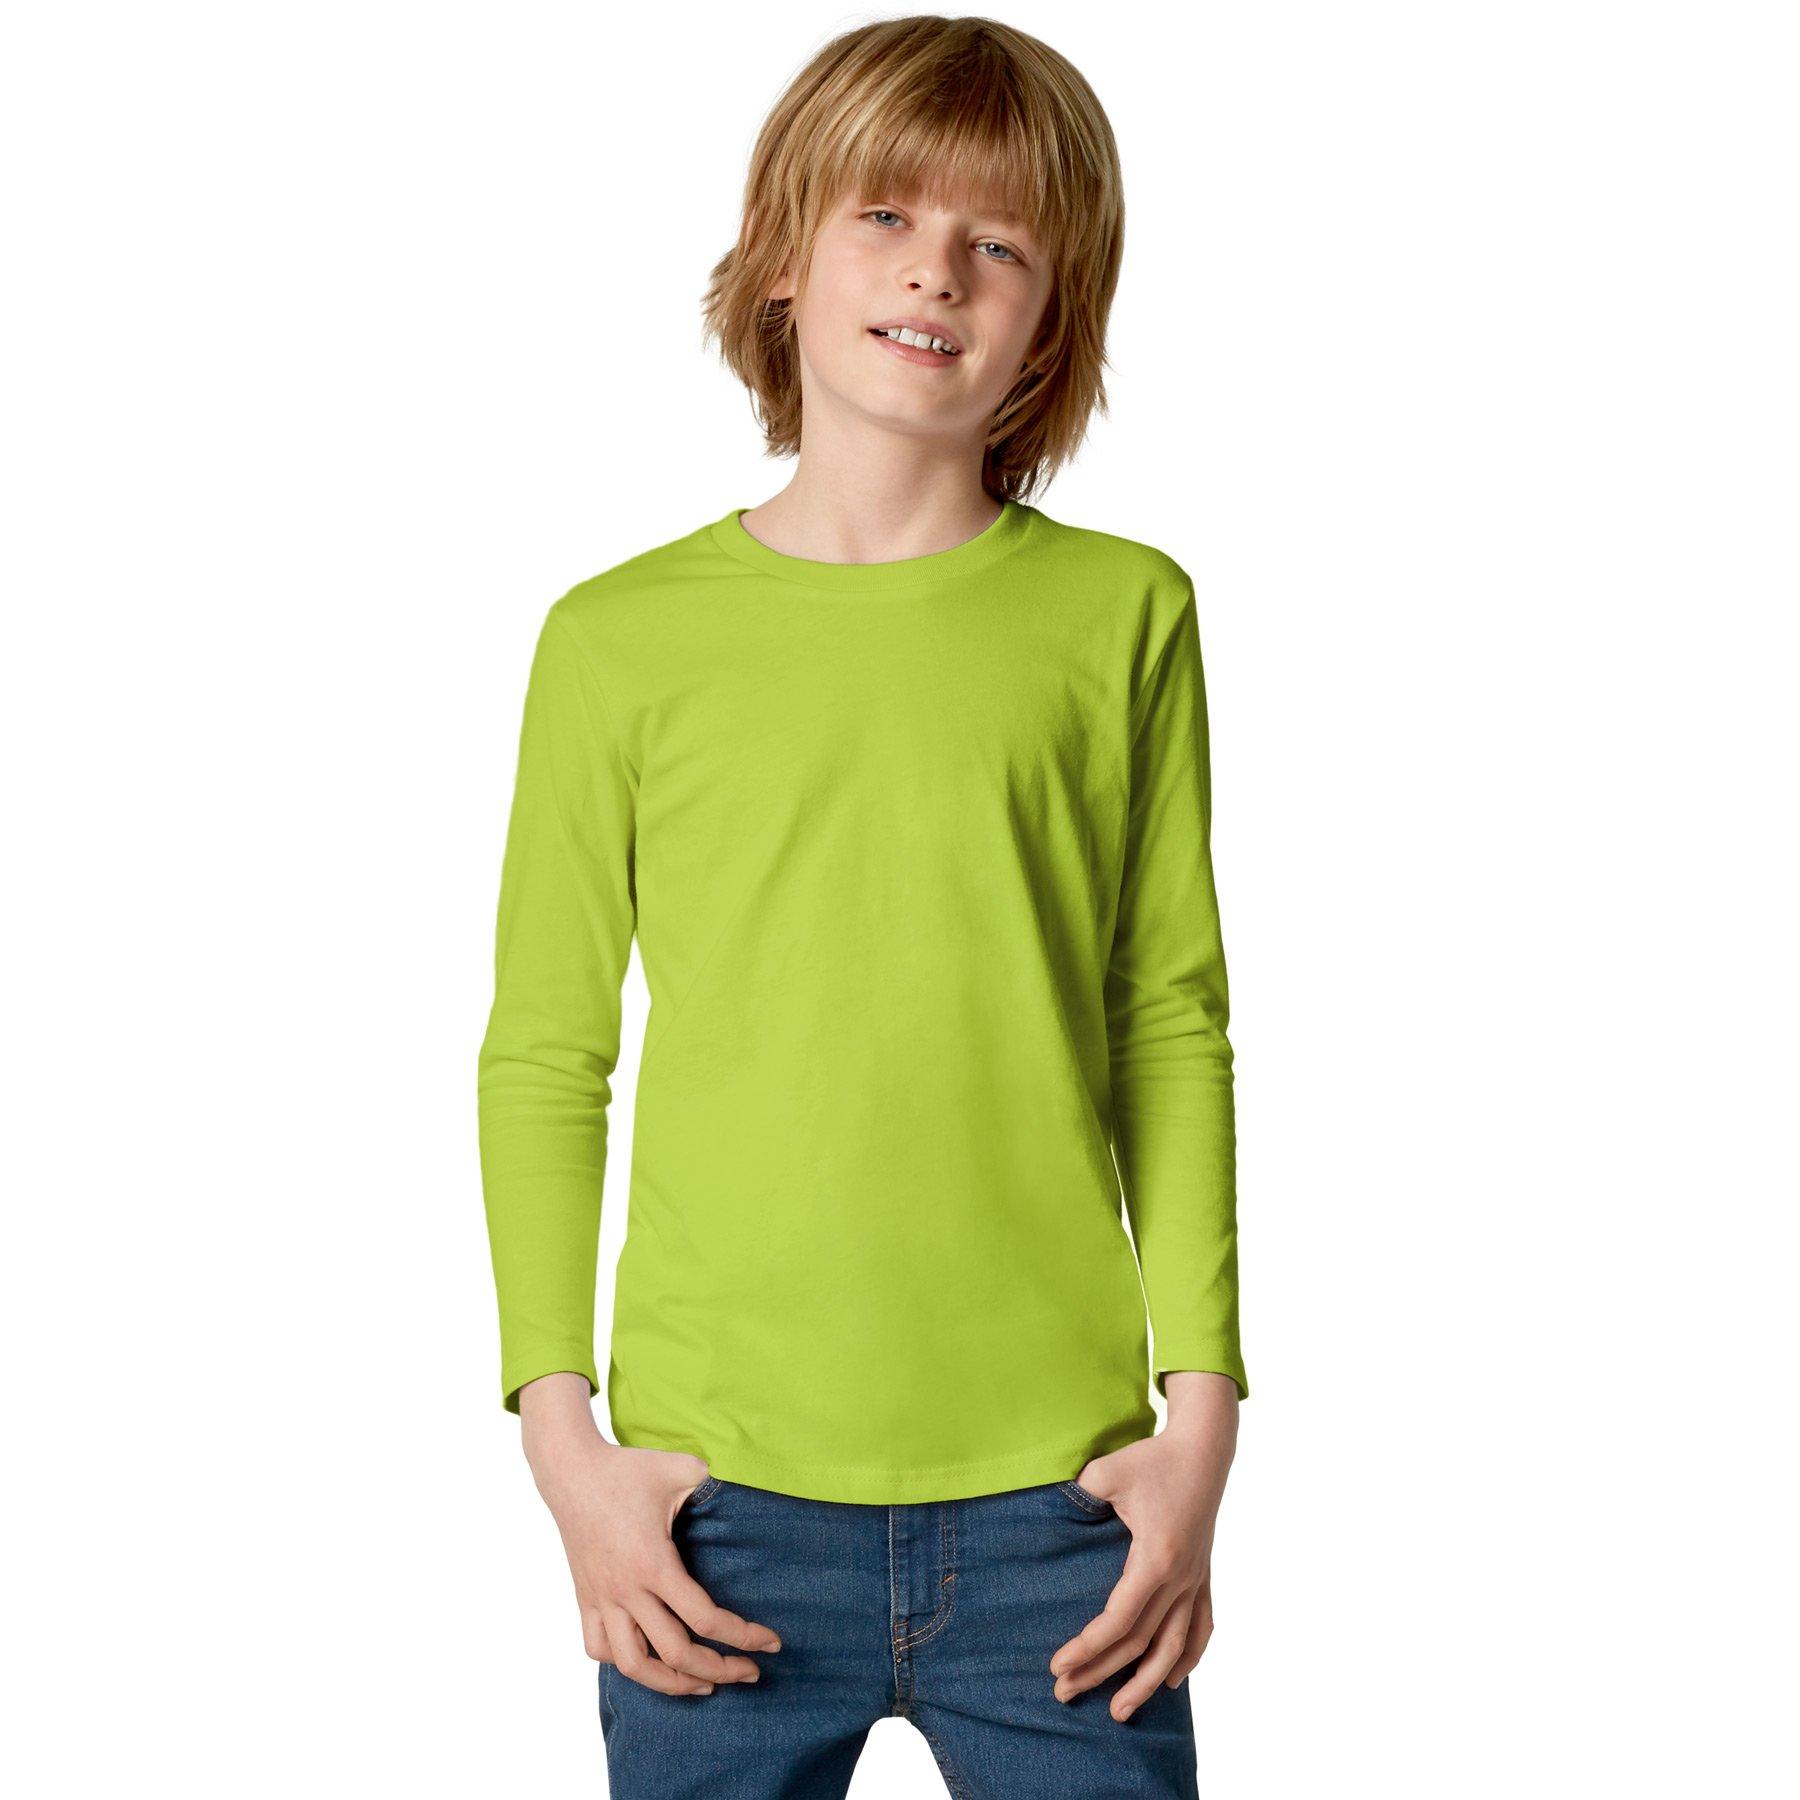 Langarm-shirt Kinder Jungen Hellgrün 128 von Tectake